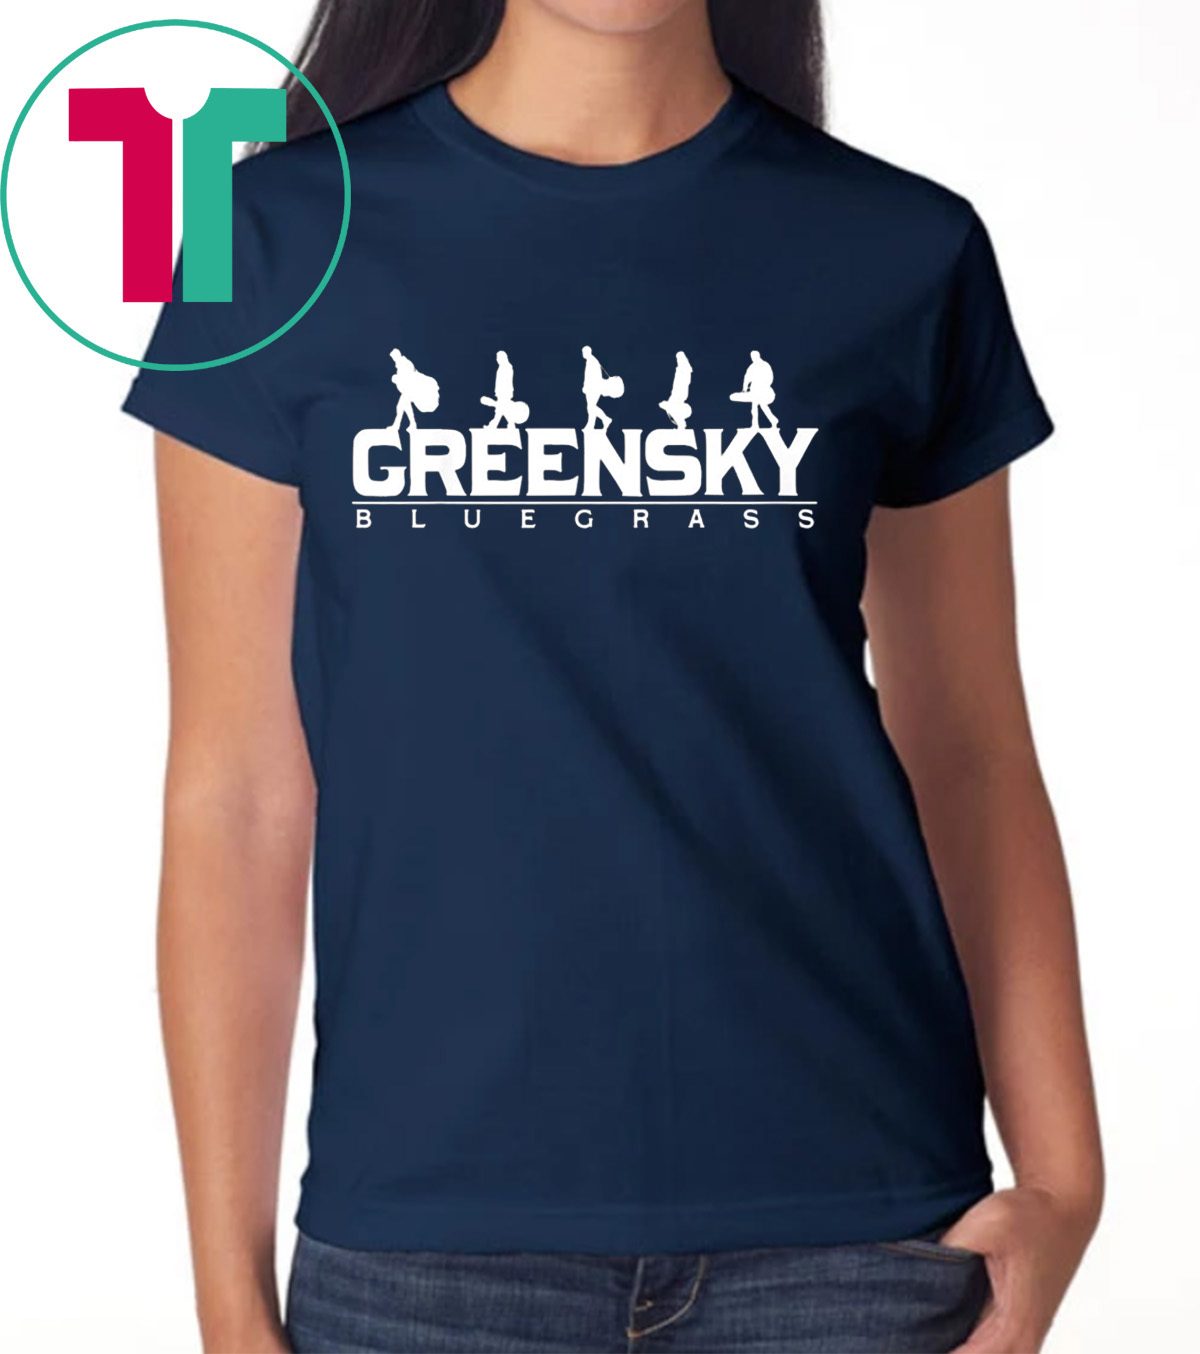 Greensky Bluegrass T-Shirt for Mens Womens Kids - OrderQuilt.com